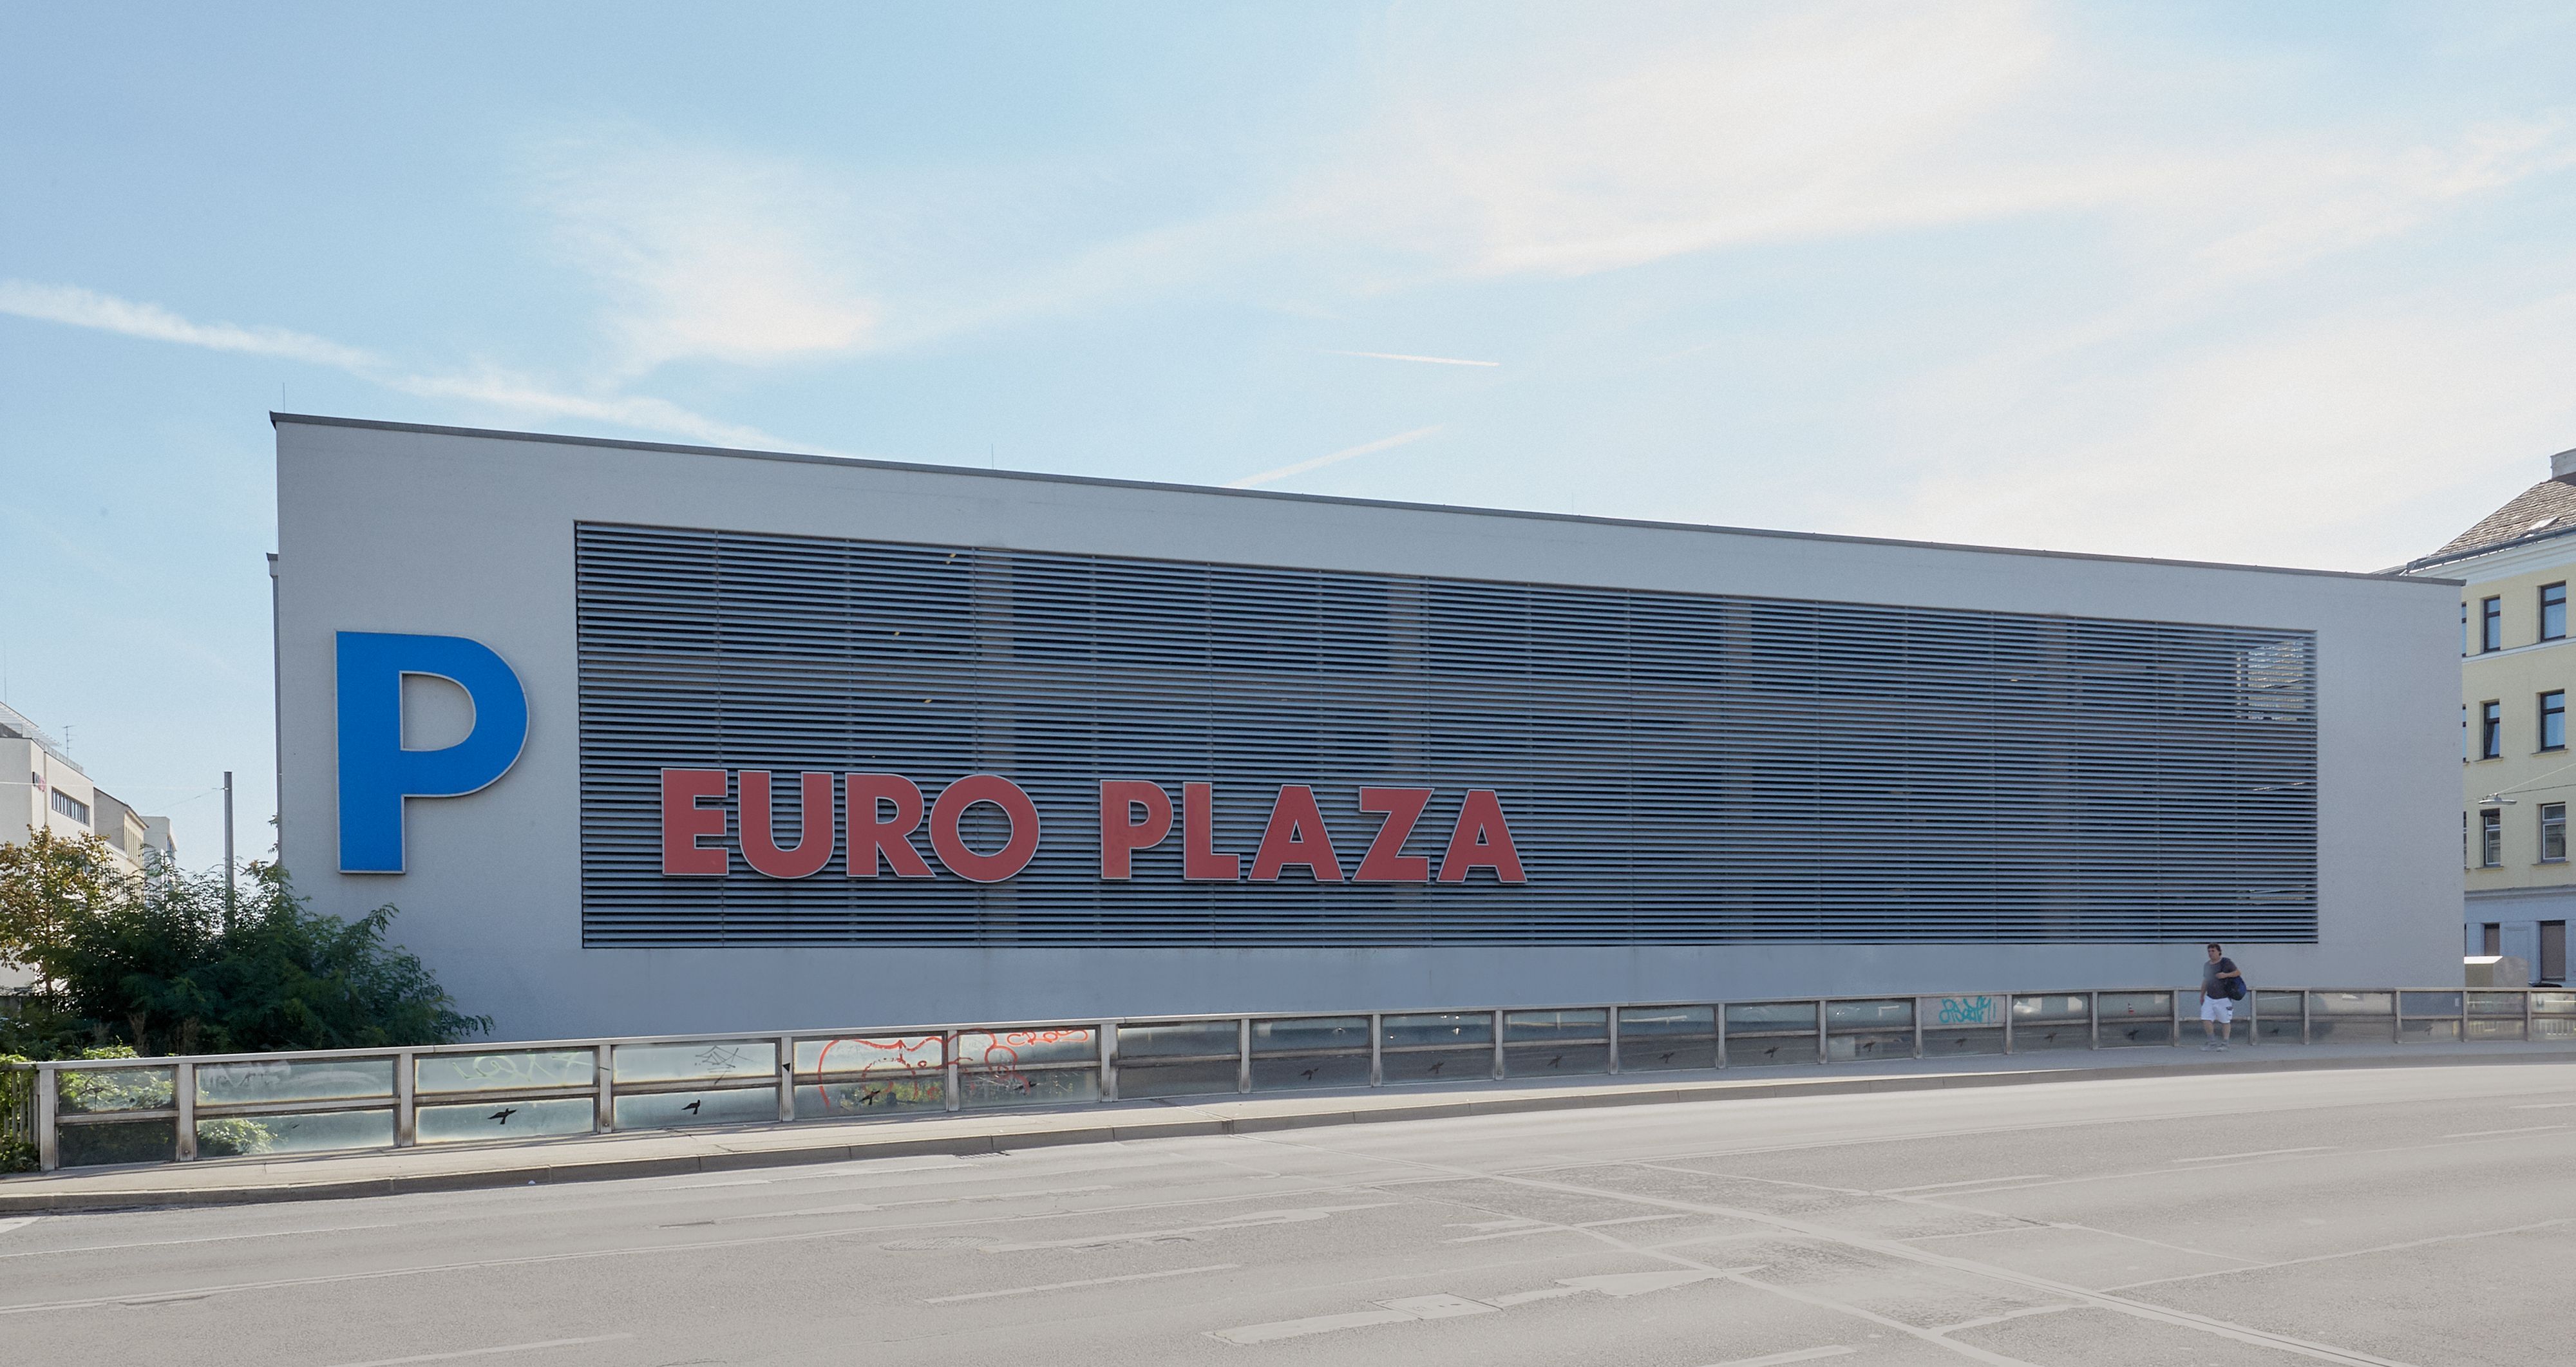 Foto: Längsseite eines Parkhauses mit teils transparenter Fassade; darauf eine dreidimensional gefertigte Aufschrift „P EURO PLAZA“; im Vordergrund eine leere mehrspurige Straße 